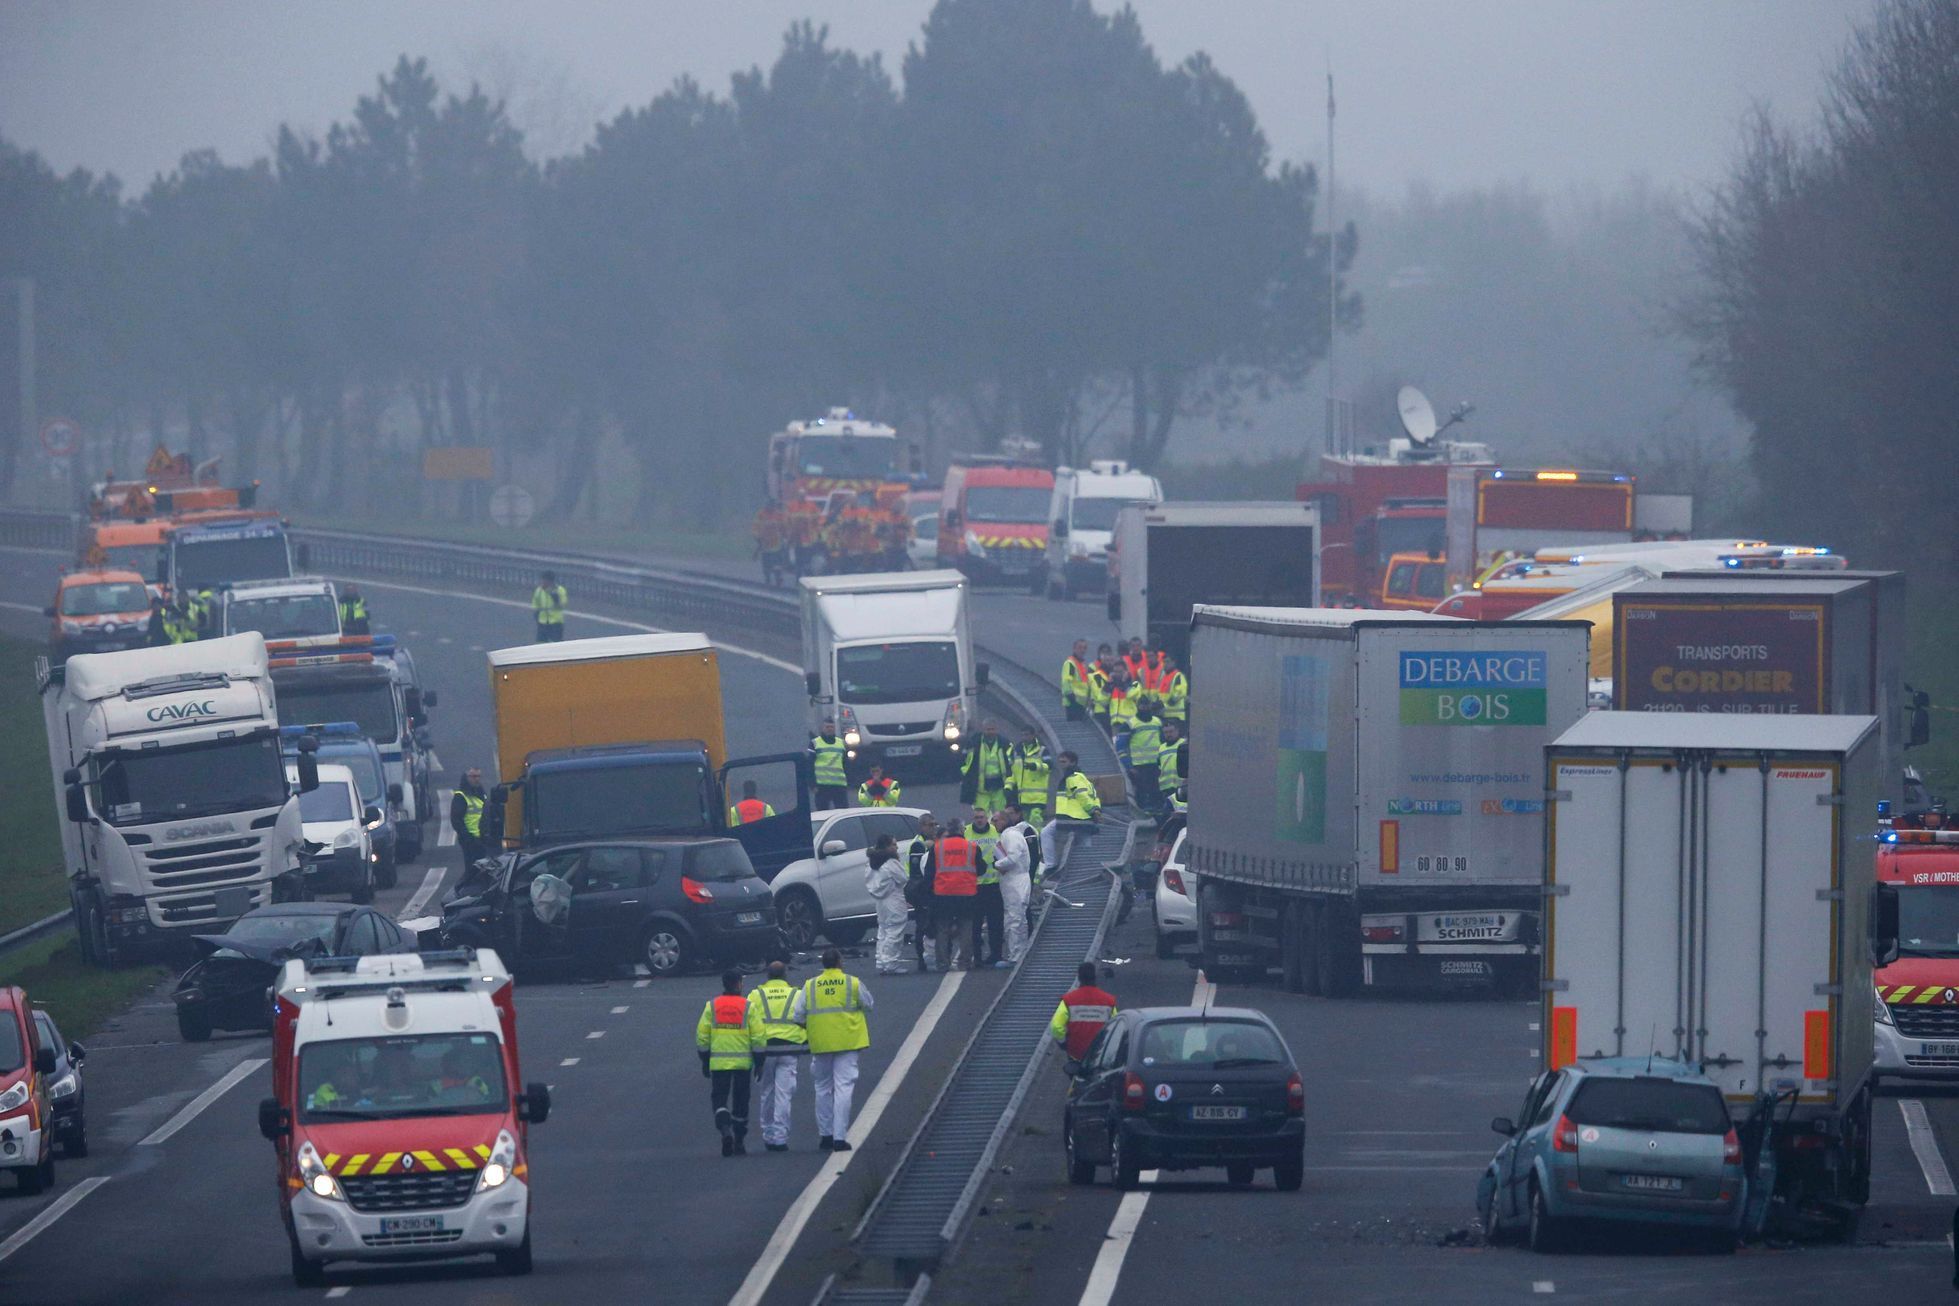 Hromadná nehoda ve Francii